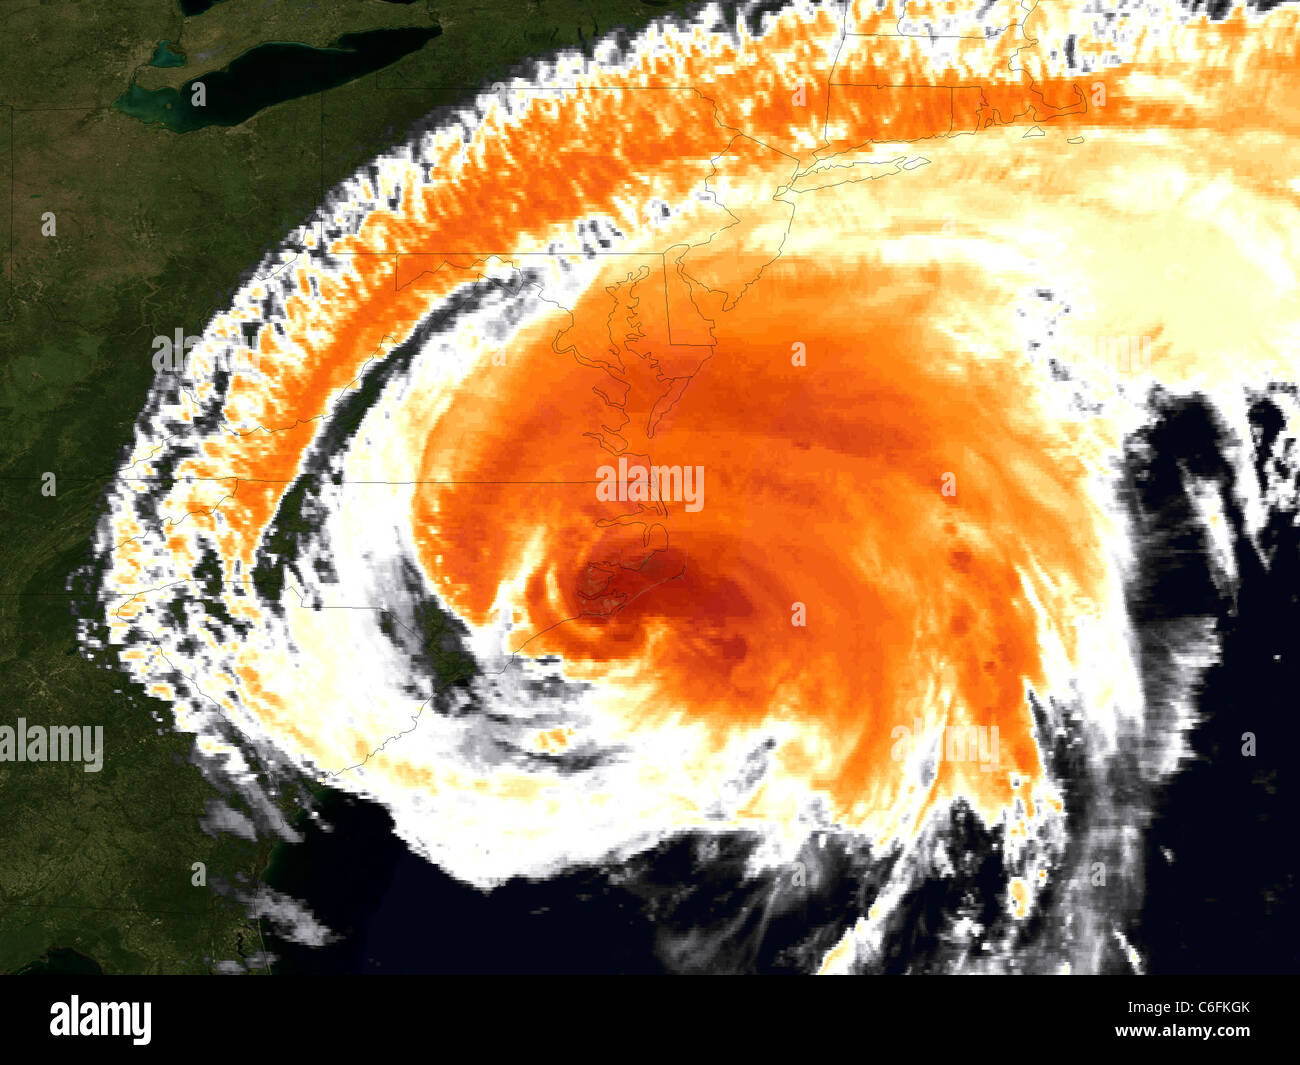 L'ouragan Irene a frappé - Image satellite visible l'ouragan Irene a frappé à environ 7:30 am edt près du cap Lookout, en Caroline du Nord avec des vents soutenus de 85 km/h (catégorie 1). Ces deux images satellites NOAA GOES-13 irene's capture moment touché terre. La première utilise le capteur visible ; la deuxième est l'imagerie infrarouge colorisée. L'ouragan les avertissements sont en vigueur pour une bonne partie de la côte américaine à partir de la Caroline du Nord jusqu'au Maine, alors que les dernières prévisions du National Hurricane Center a-t-il chemin longeant la côte au cours des prochaines 24 heures, peut-être la position à l'intérieur des terres le long de long island, New York. Banque D'Images